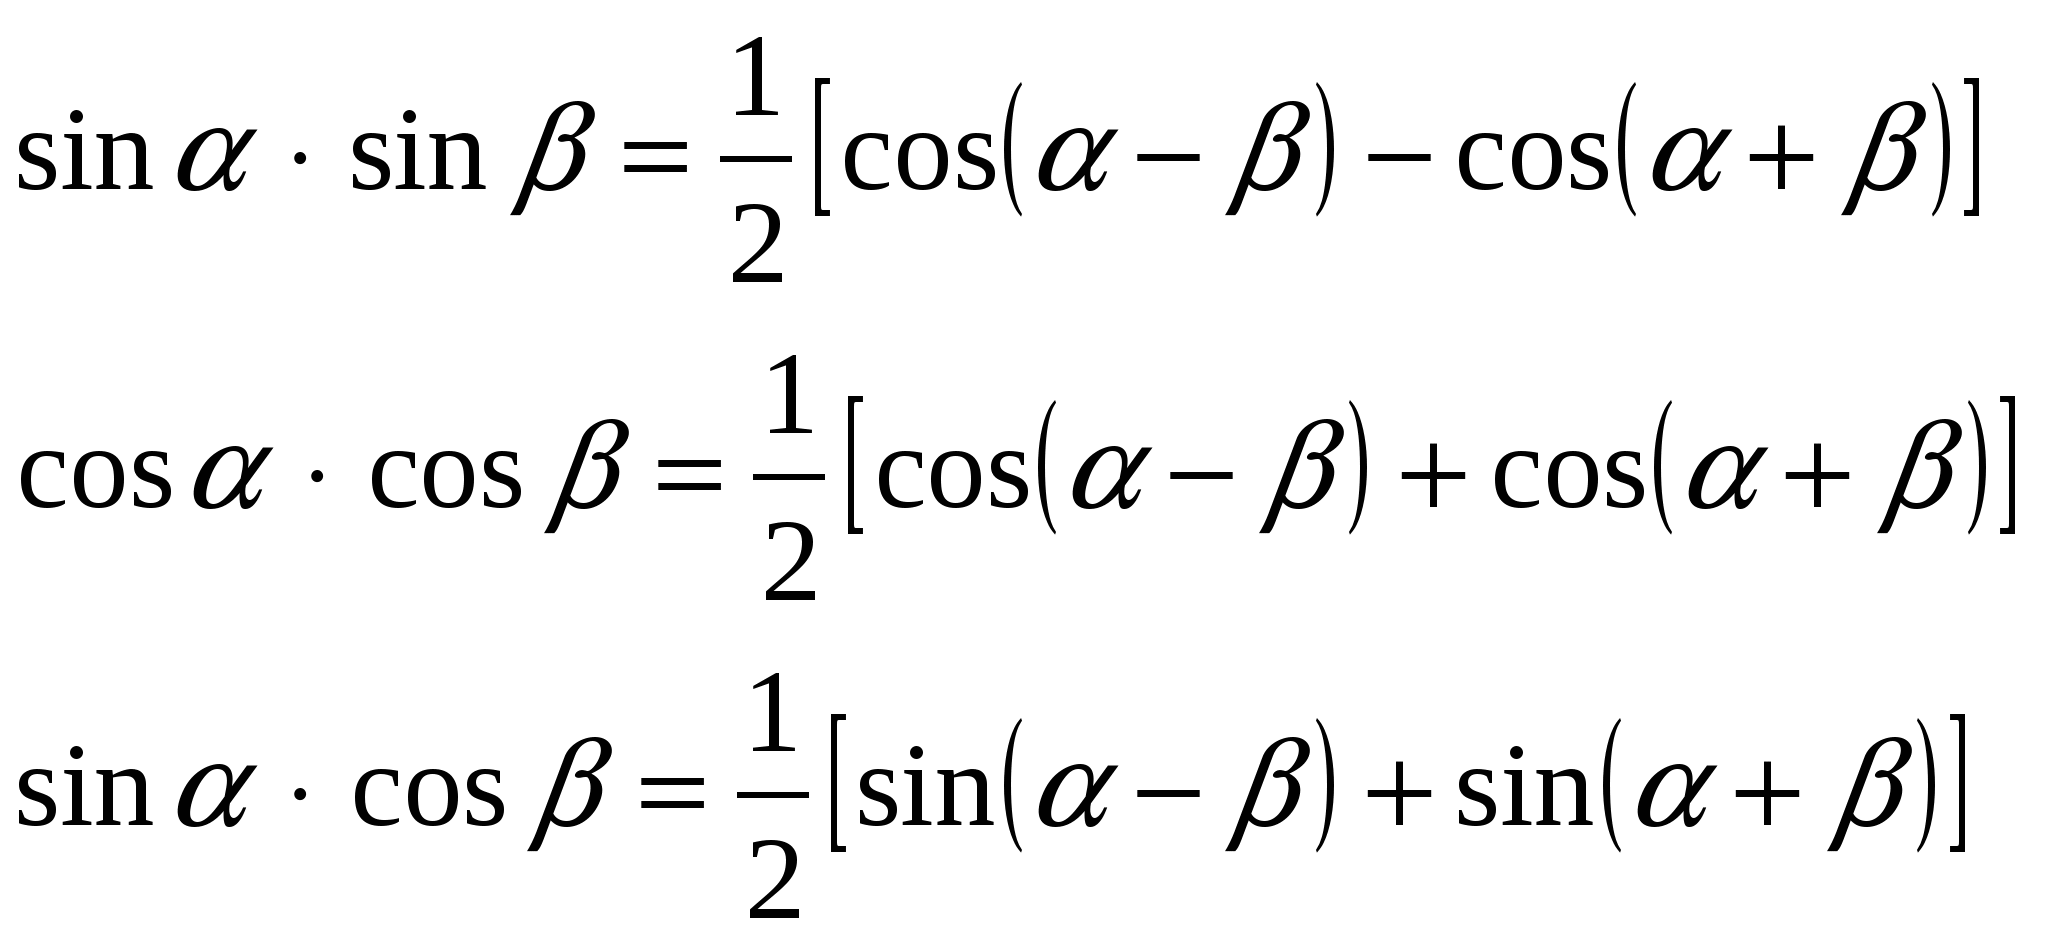 Синус альфа умножить на синус бета. Формулы умножения синусов и косинусов. Произведение синусов и косинусов формулы. Формула умножения синусов. Формула умножения косинусов.